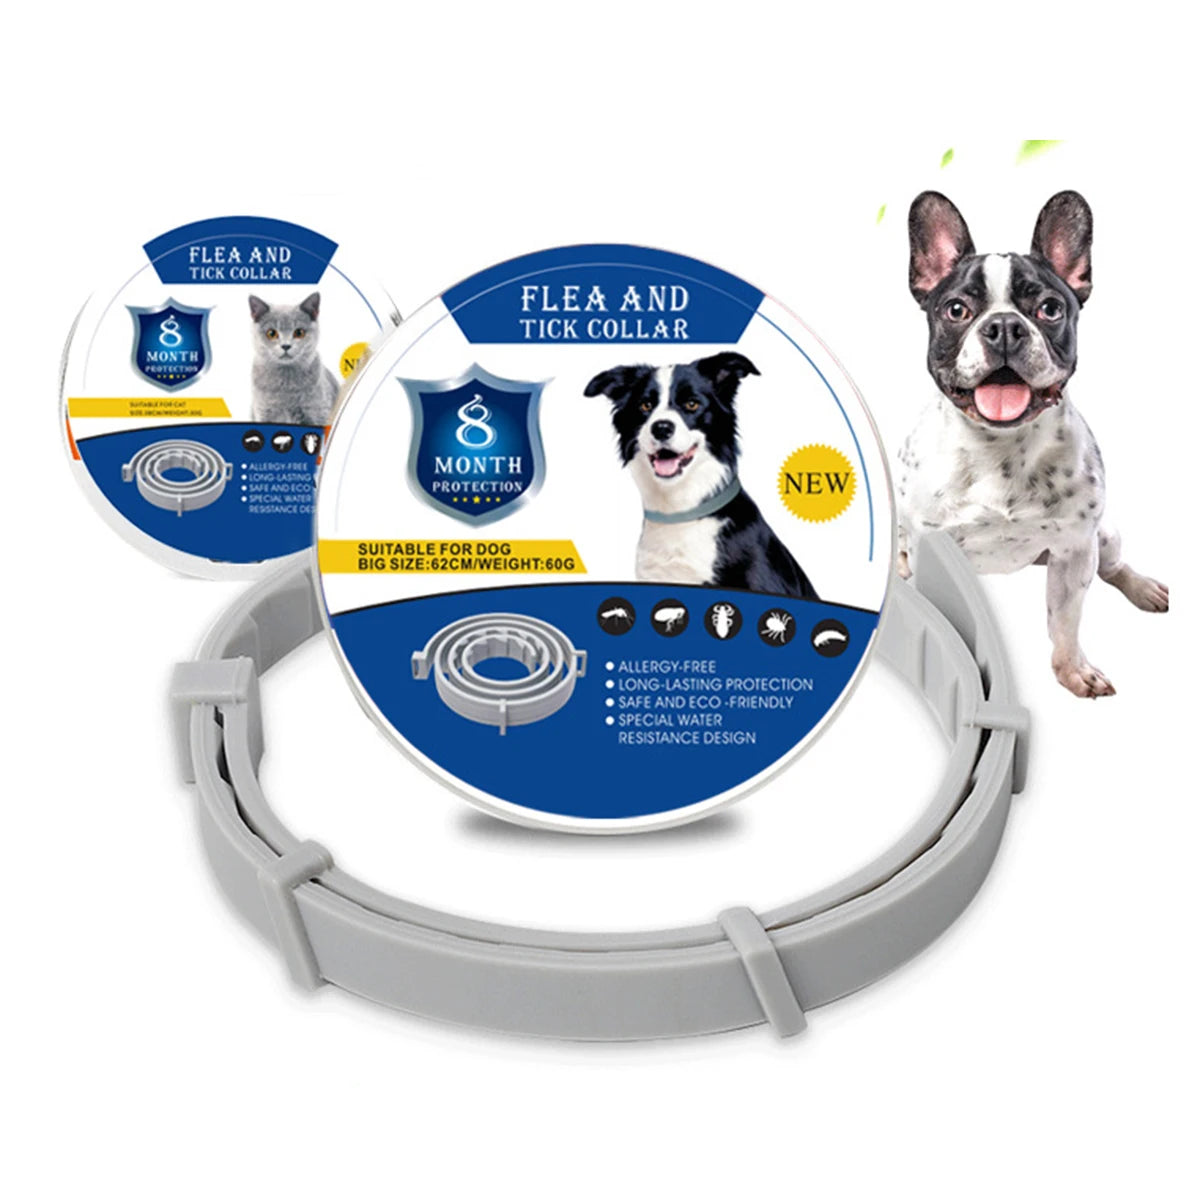 extendable pet dog flea collar antiparasitic necklace adjustable anti flea and tick collar